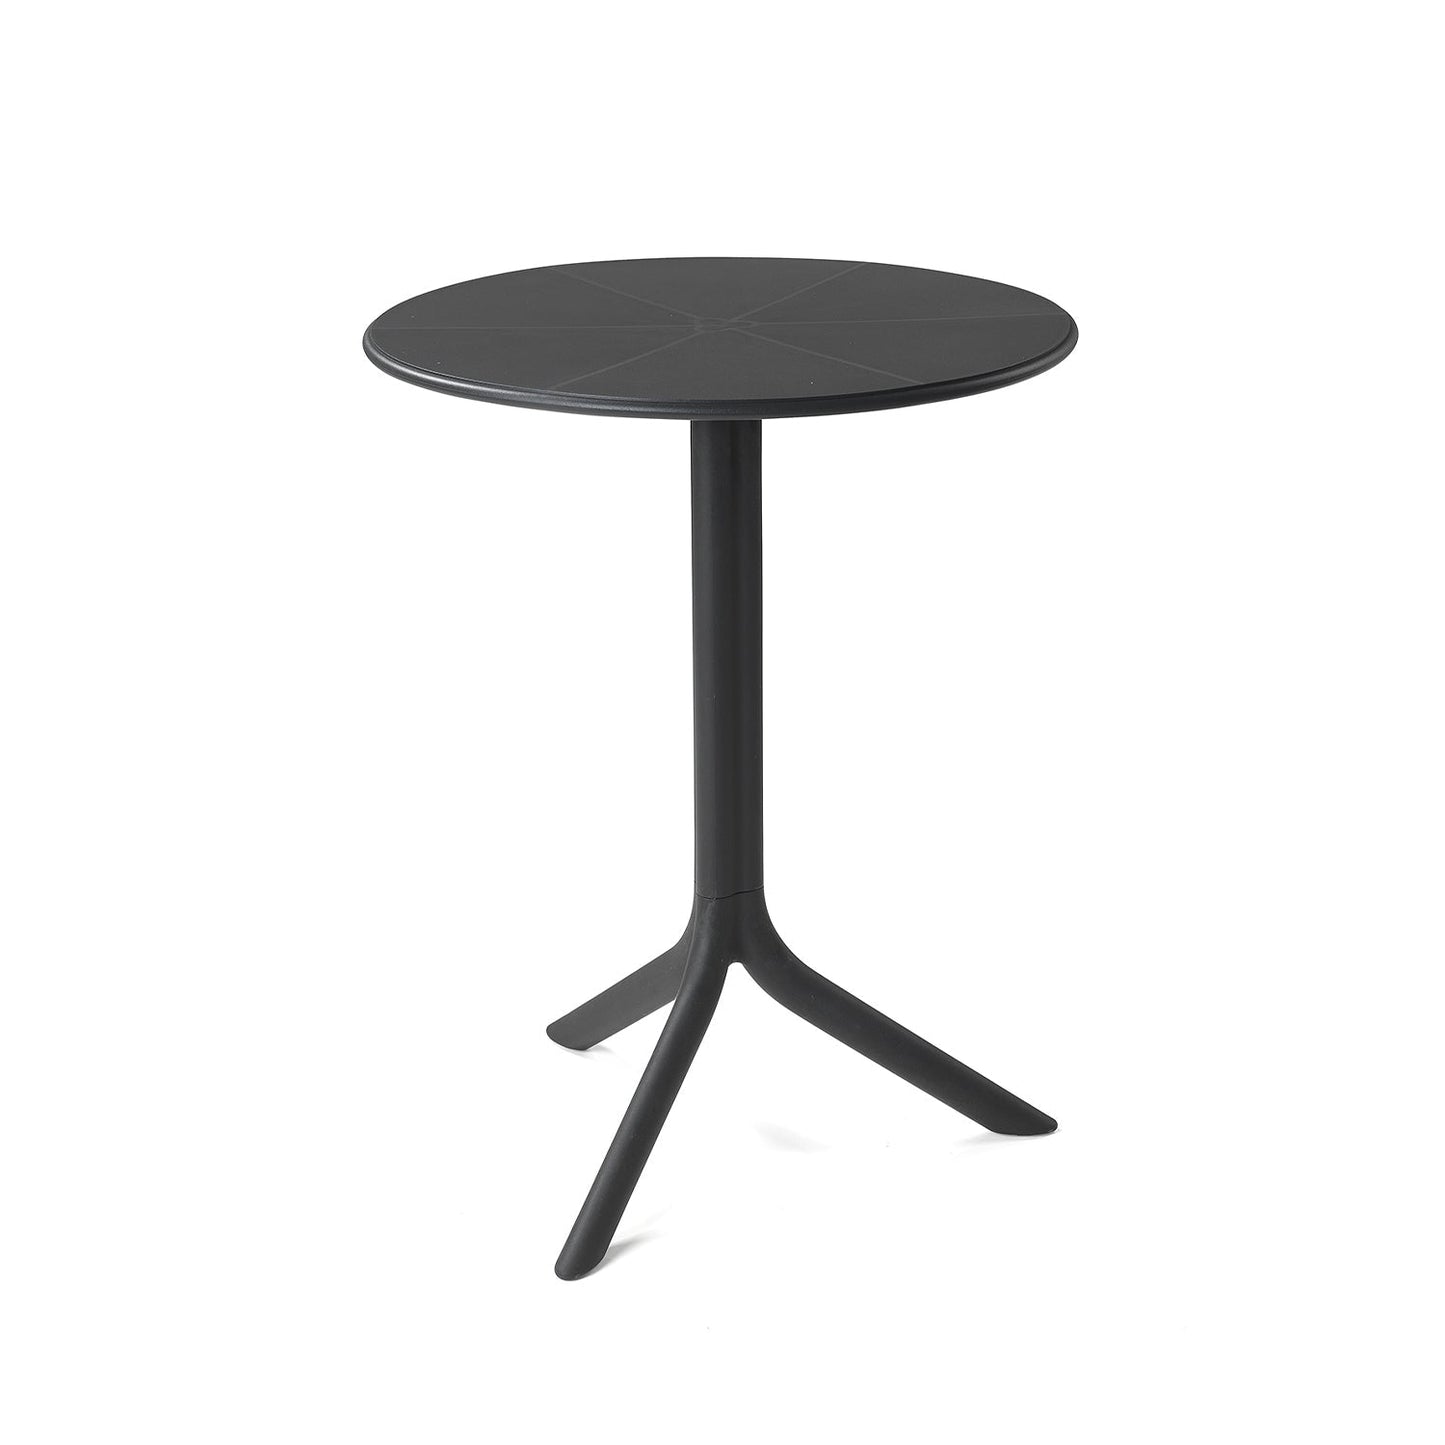 Nardi Garden Furniture - Spritz Table in Anthracite